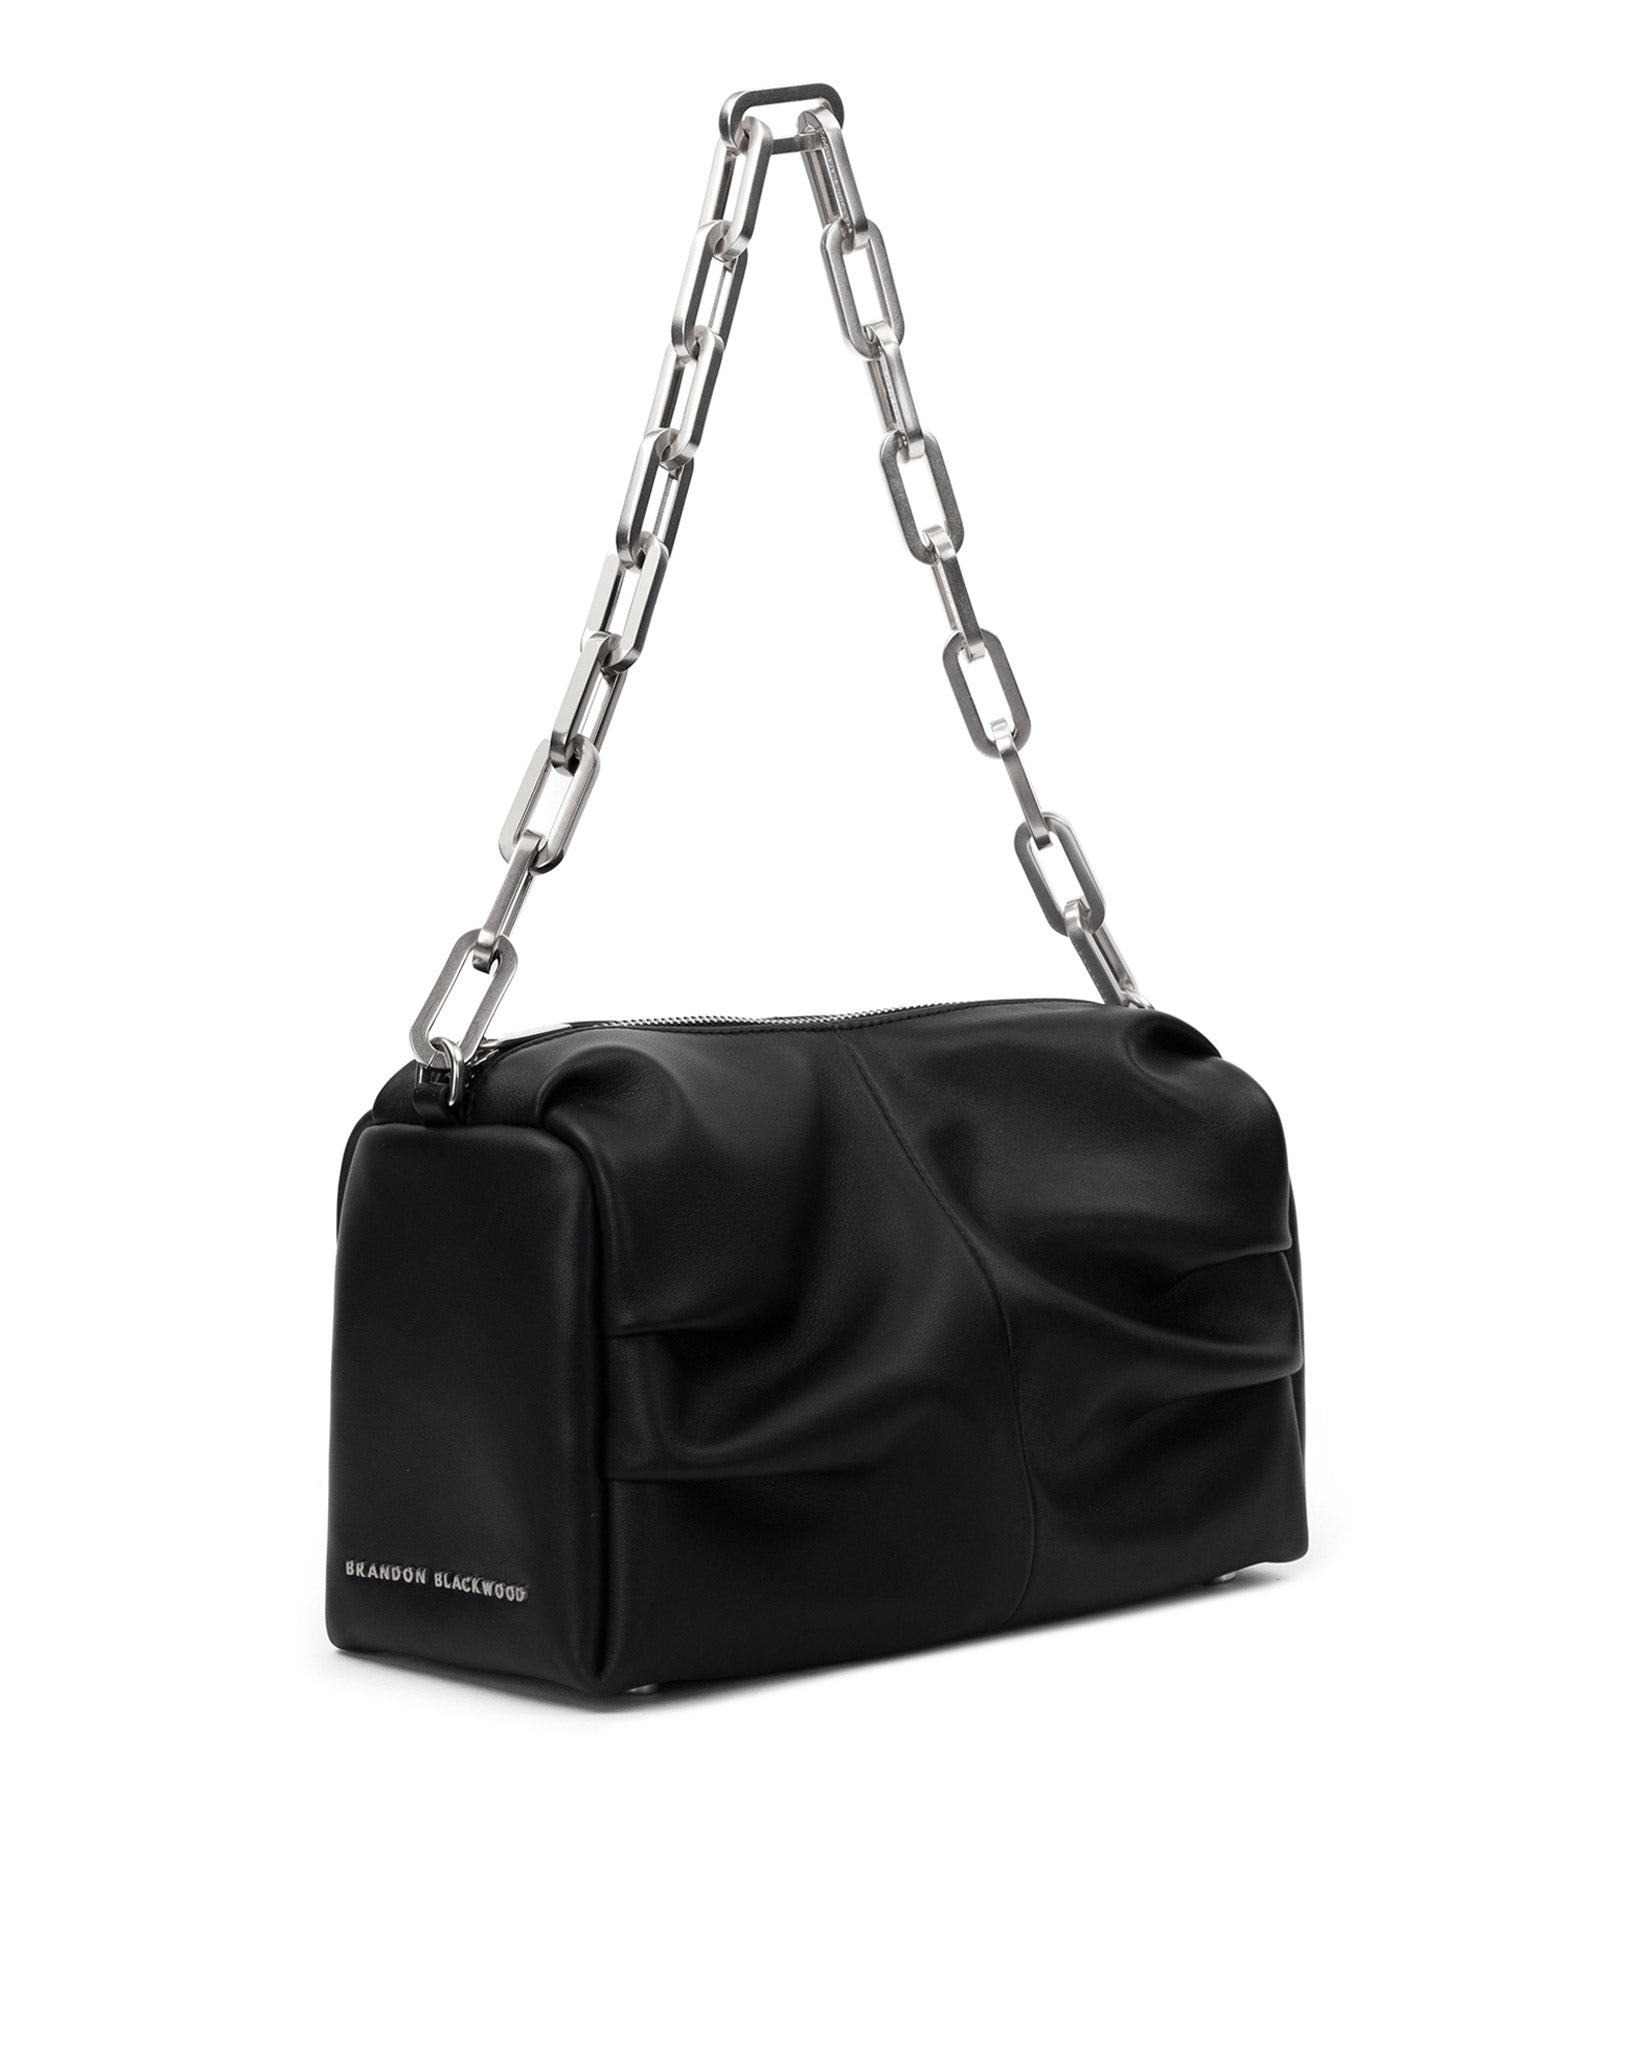 US$ 120.00 - EvaLuLu Chain Shoulder Bag Black with Silver Hardware -  www.evalulu.com